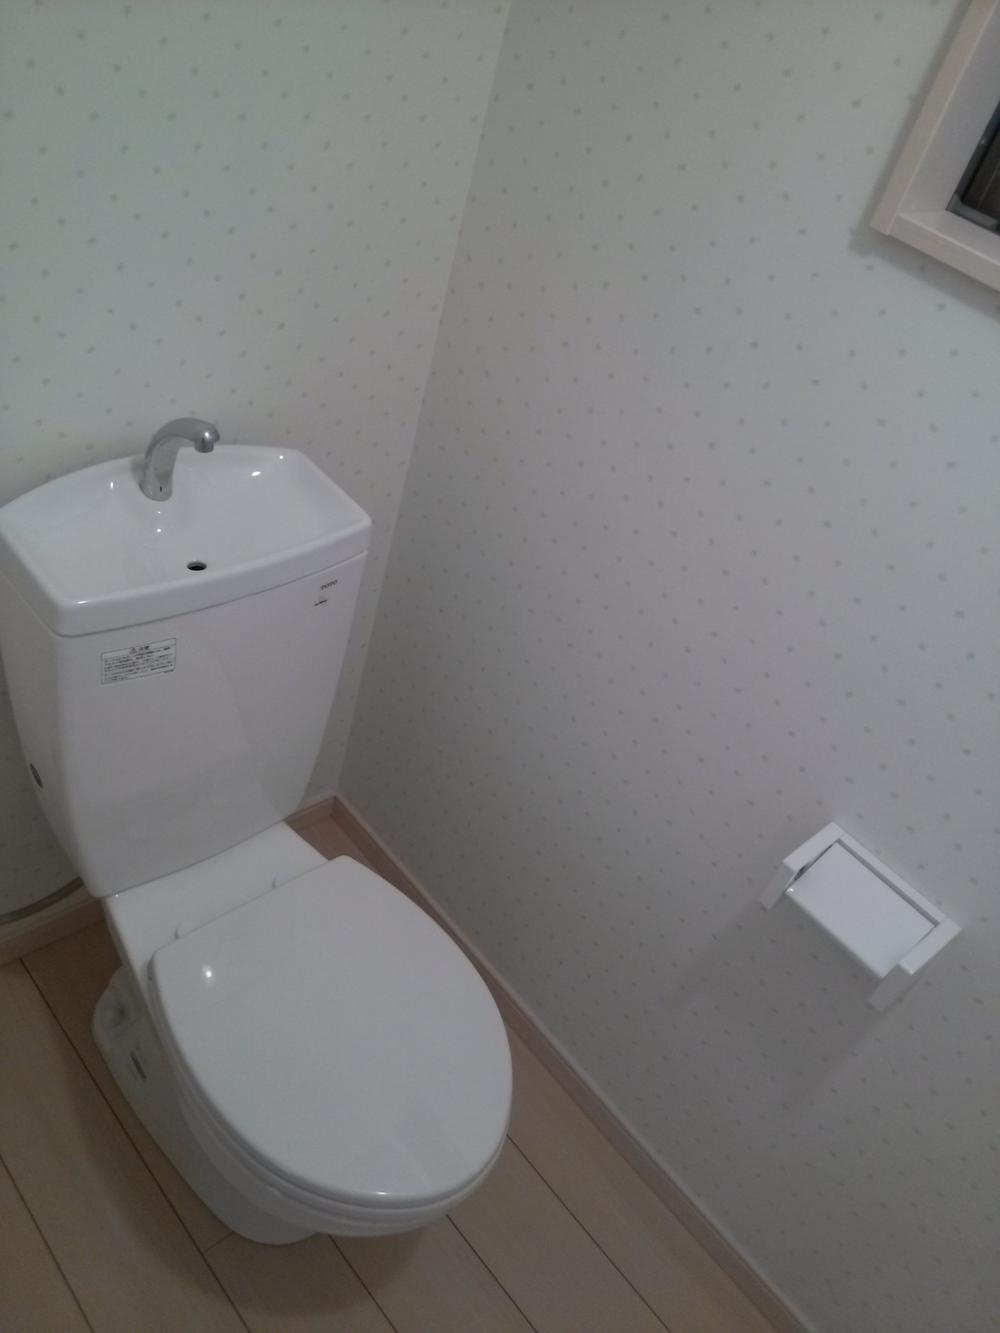 Toilet. Indoor (11 May 2013) shooting, "the first floor toilet."